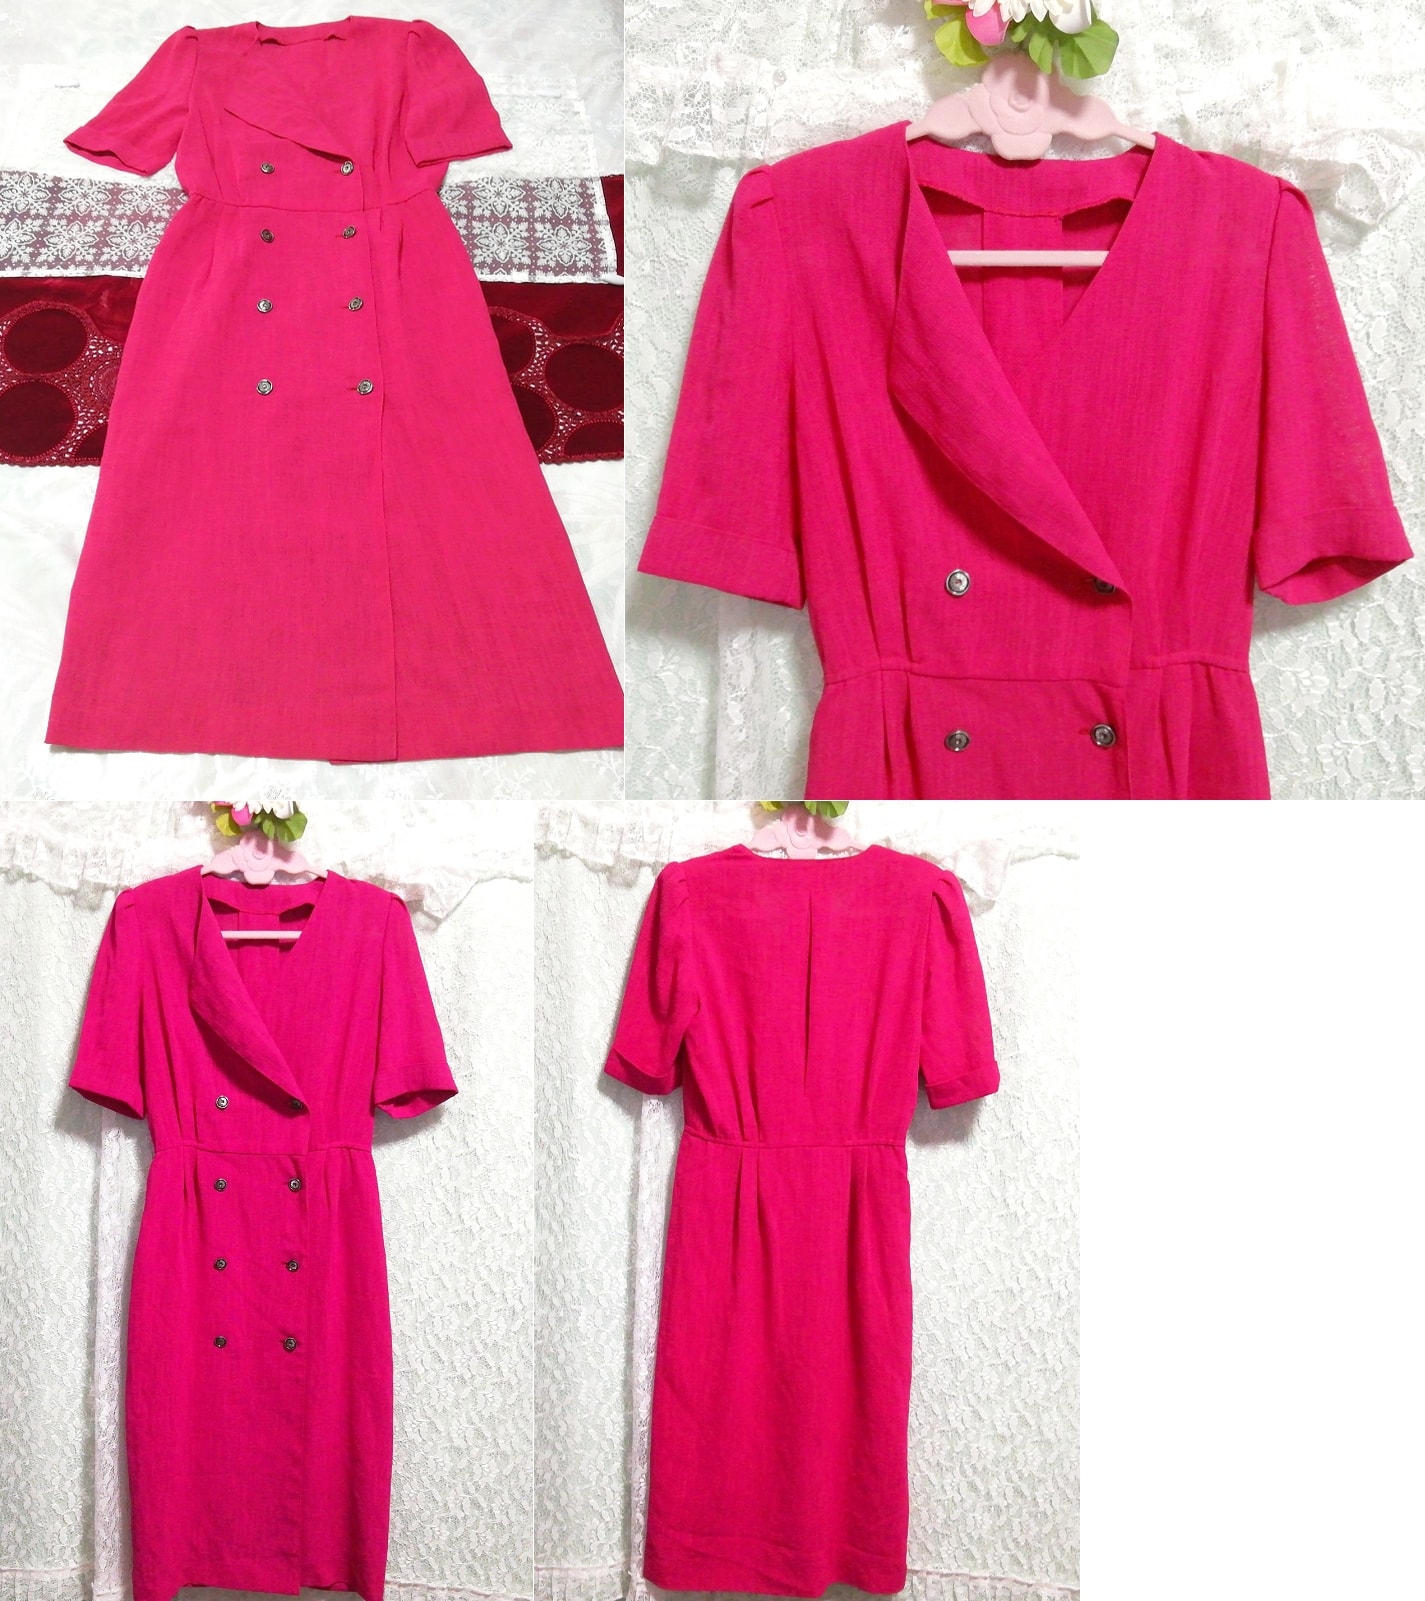 マゼンタピンク赤羽織カーディガンネグリジェワンピース Magenta pink red cardigan negligee dress, チュニック, 半袖, Mサイズ